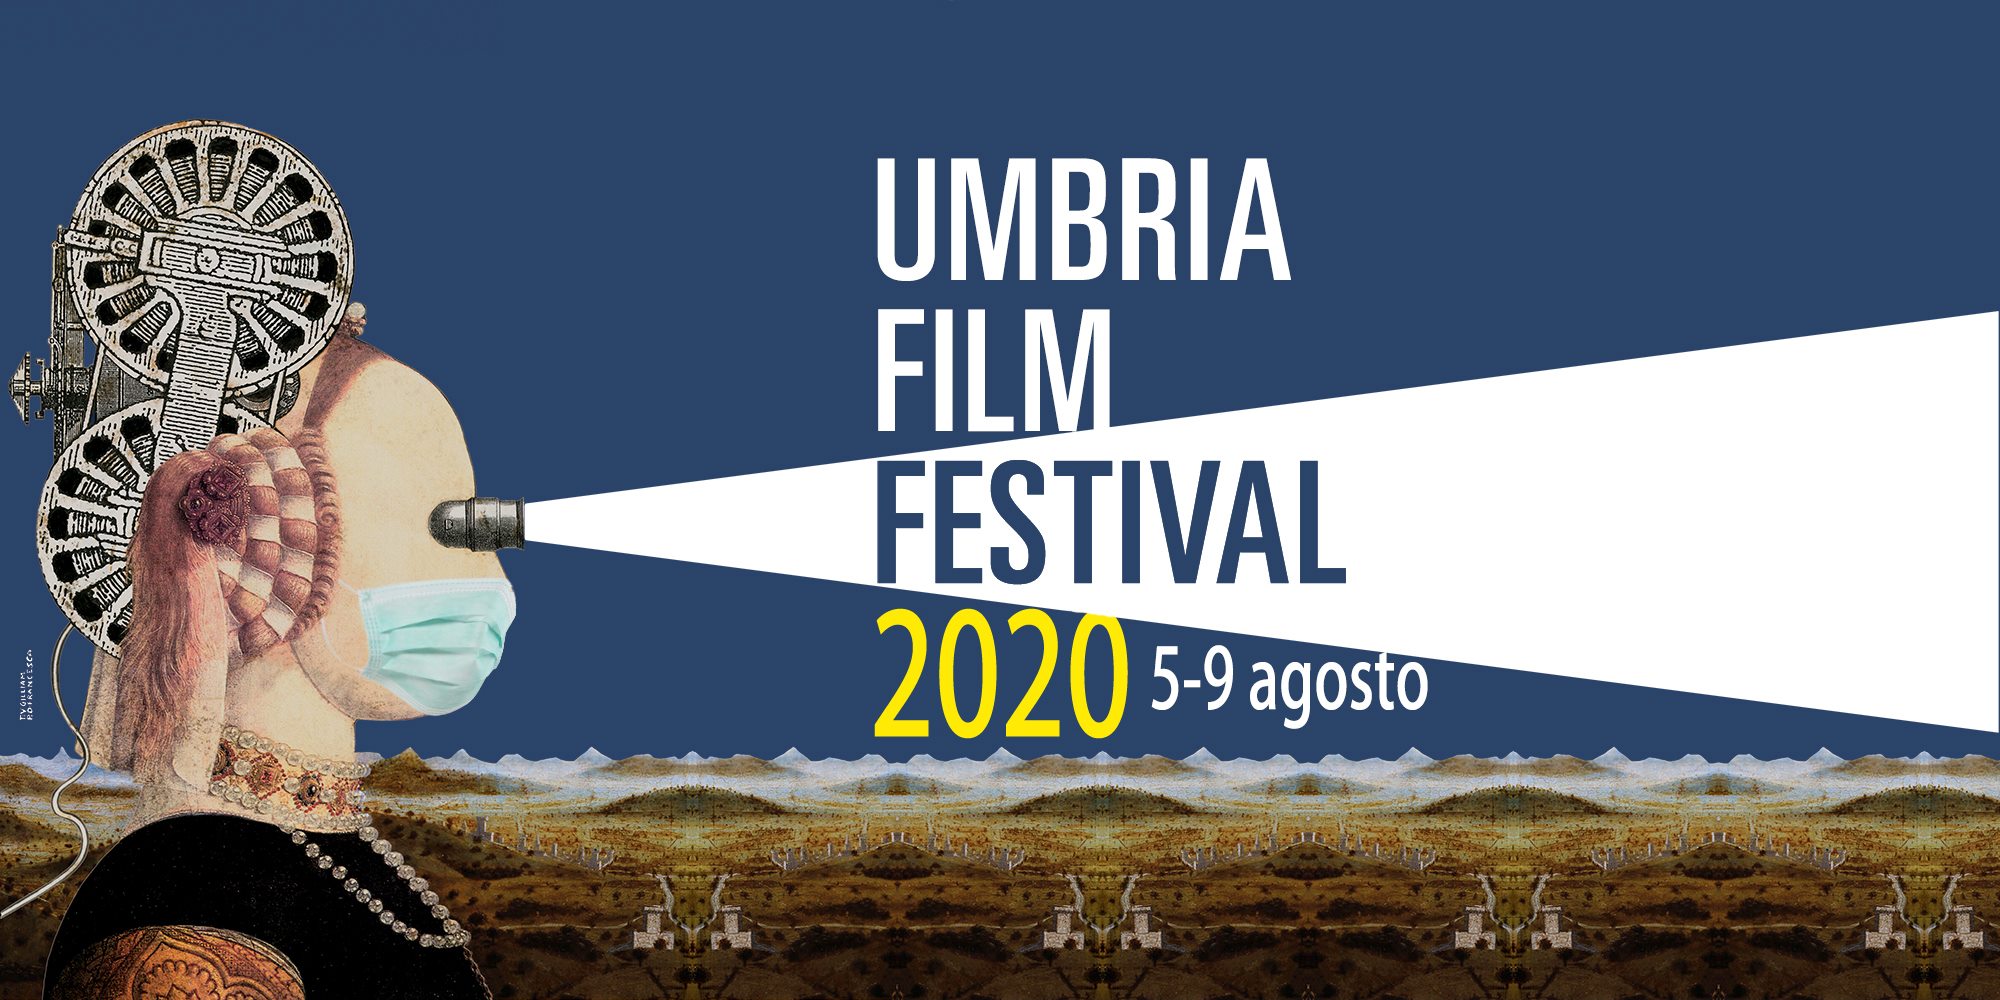 umbria film festival 2020